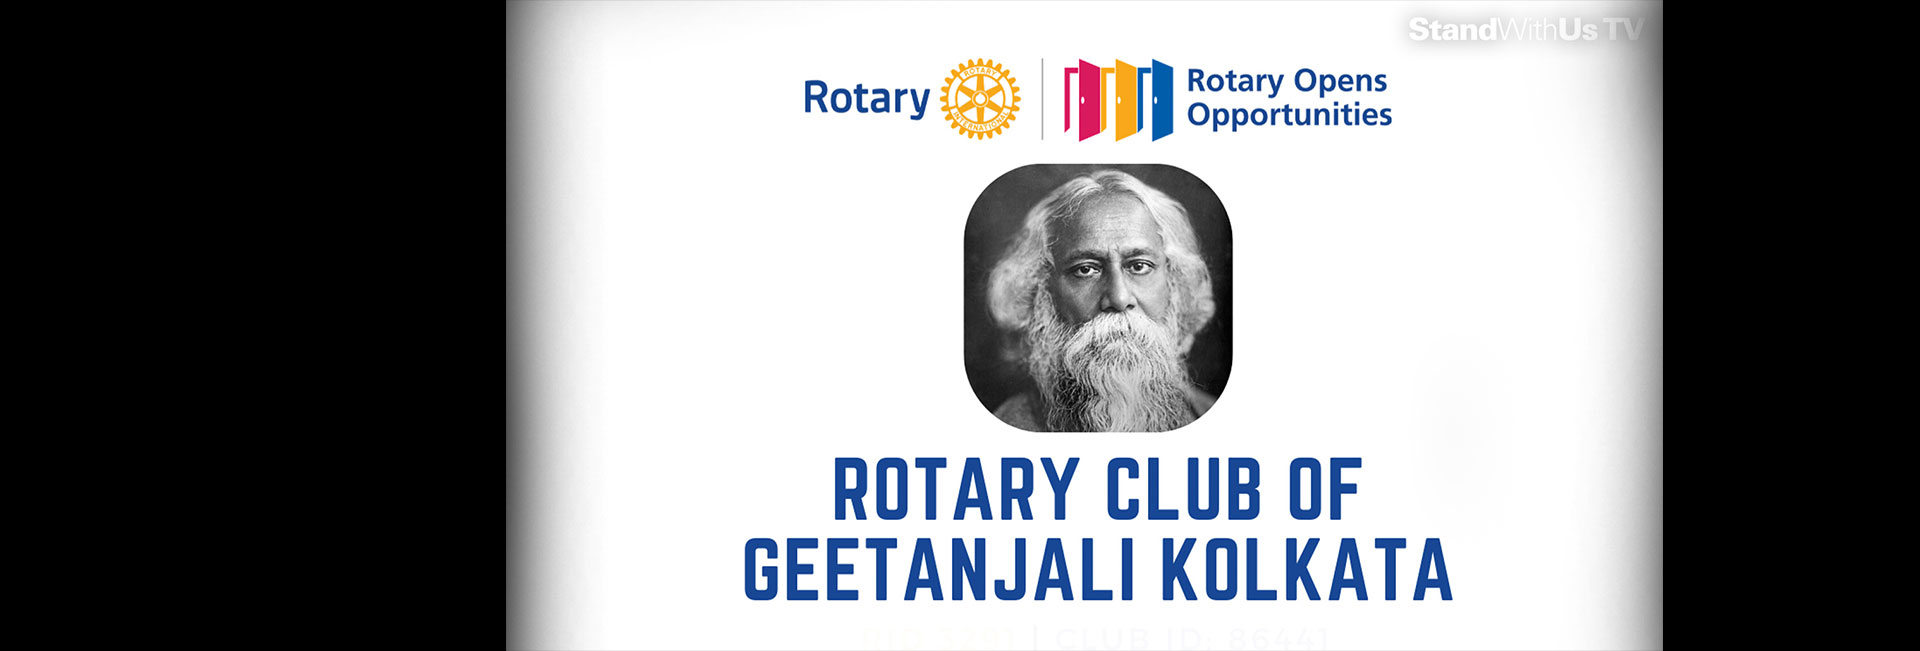 Rotary Club of Geetanjali Kolkata